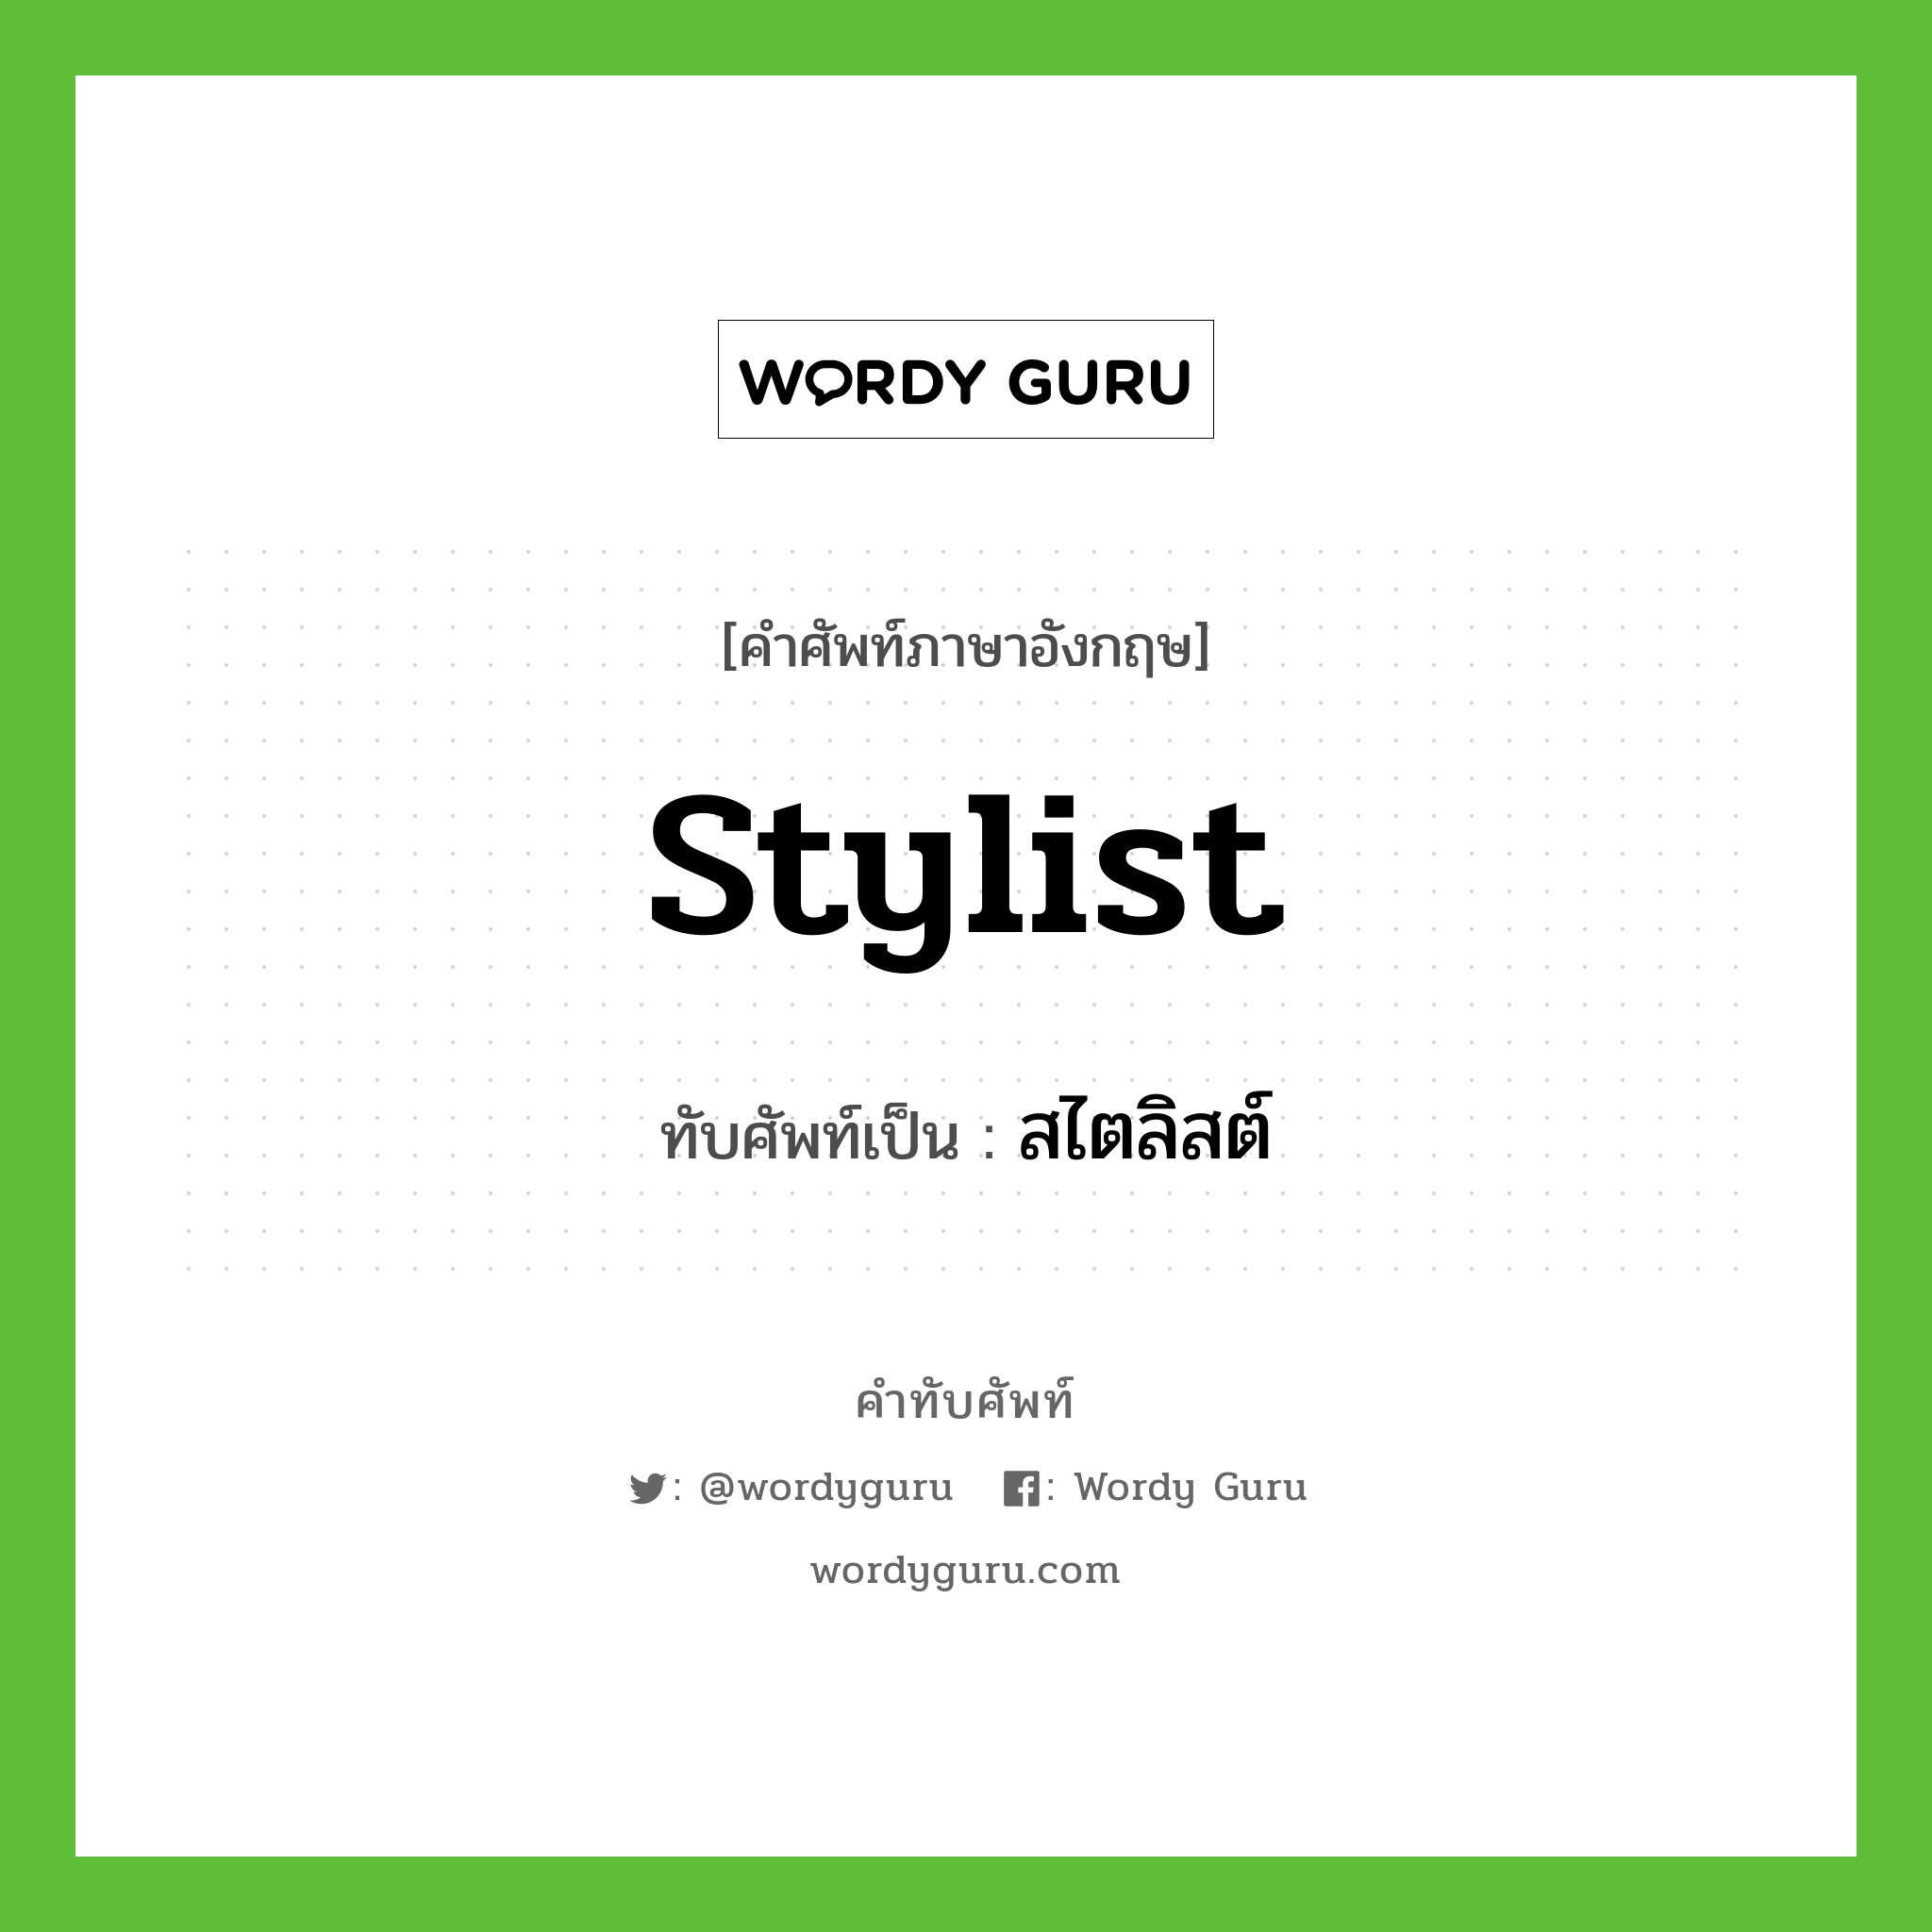 stylist เขียนเป็นคำไทยว่าอะไร?, คำศัพท์ภาษาอังกฤษ stylist ทับศัพท์เป็น สไตลิสต์